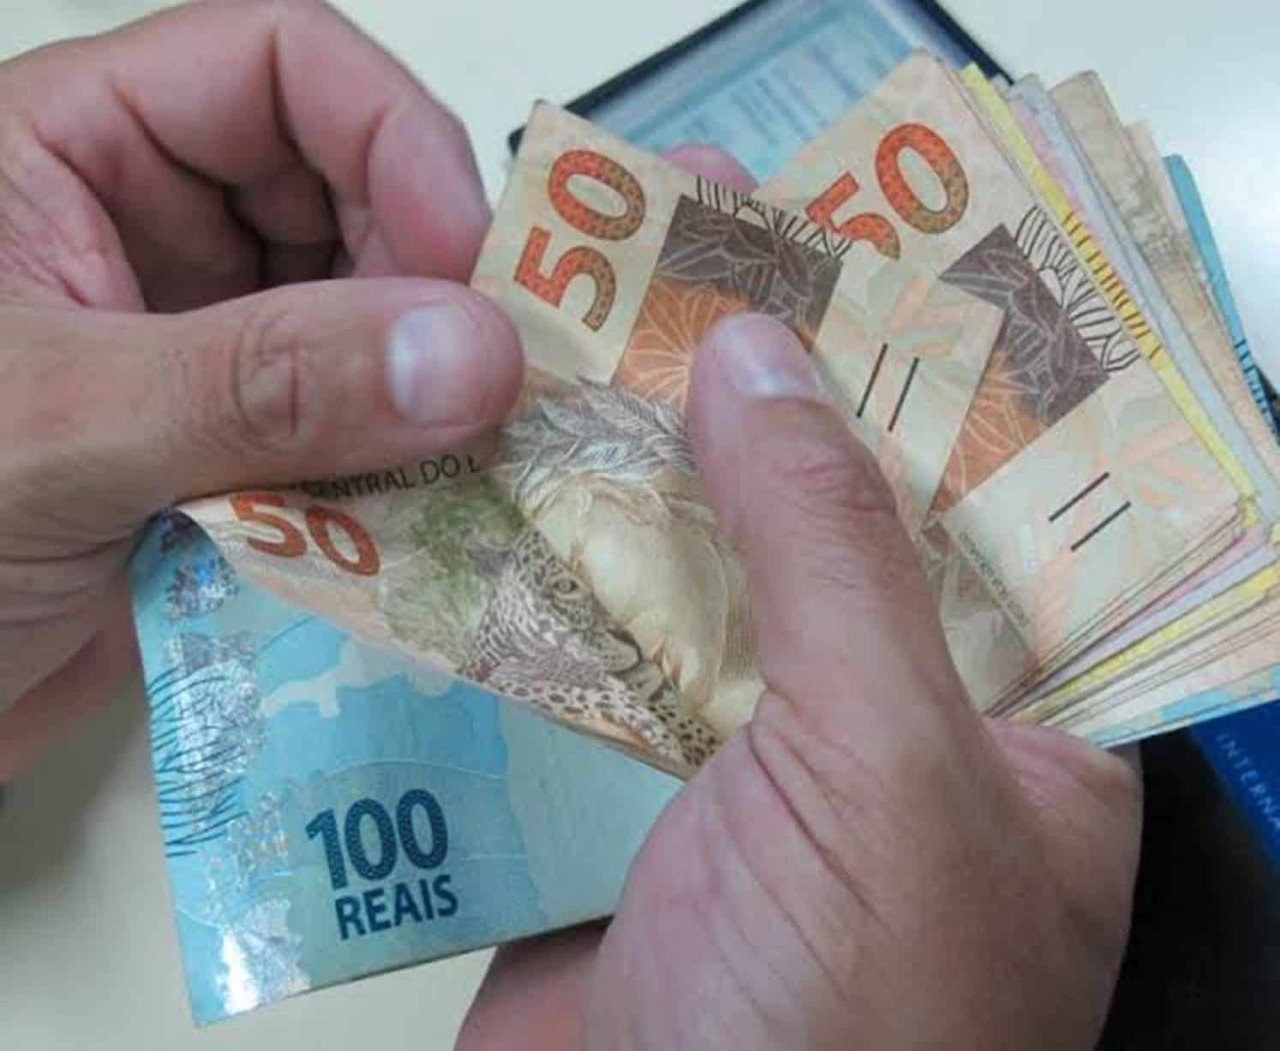 Pagamento retroativo de R$ 1.100 está disponível para milhares de brasileiros; consulte se você tem direito